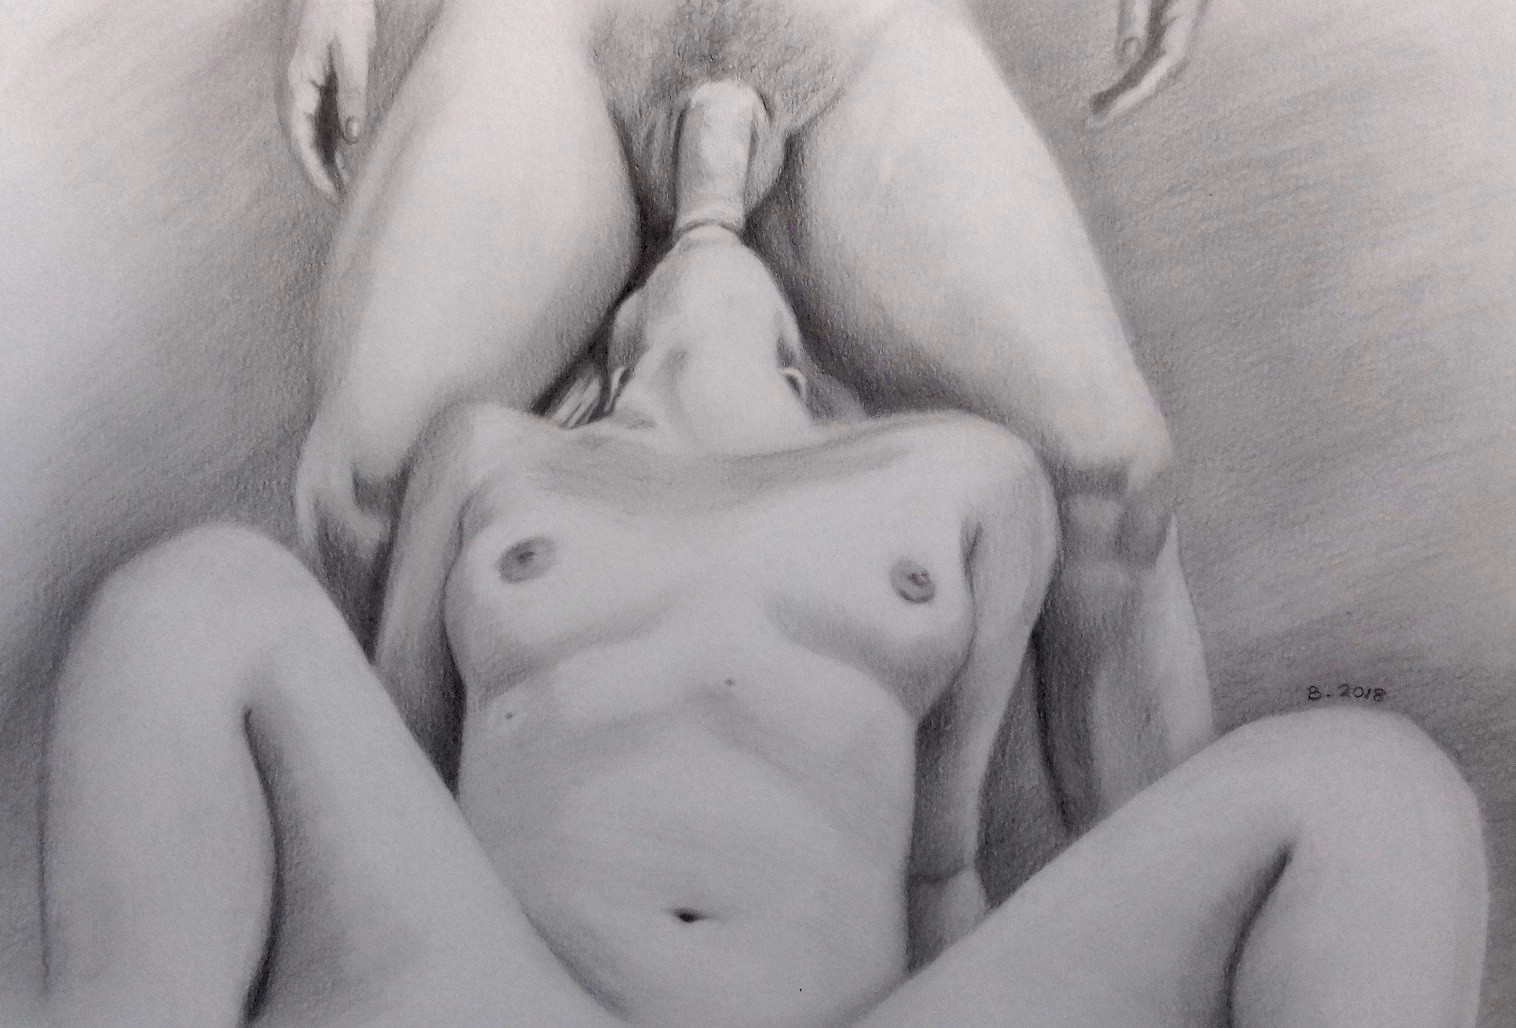 Erotic porn drawings